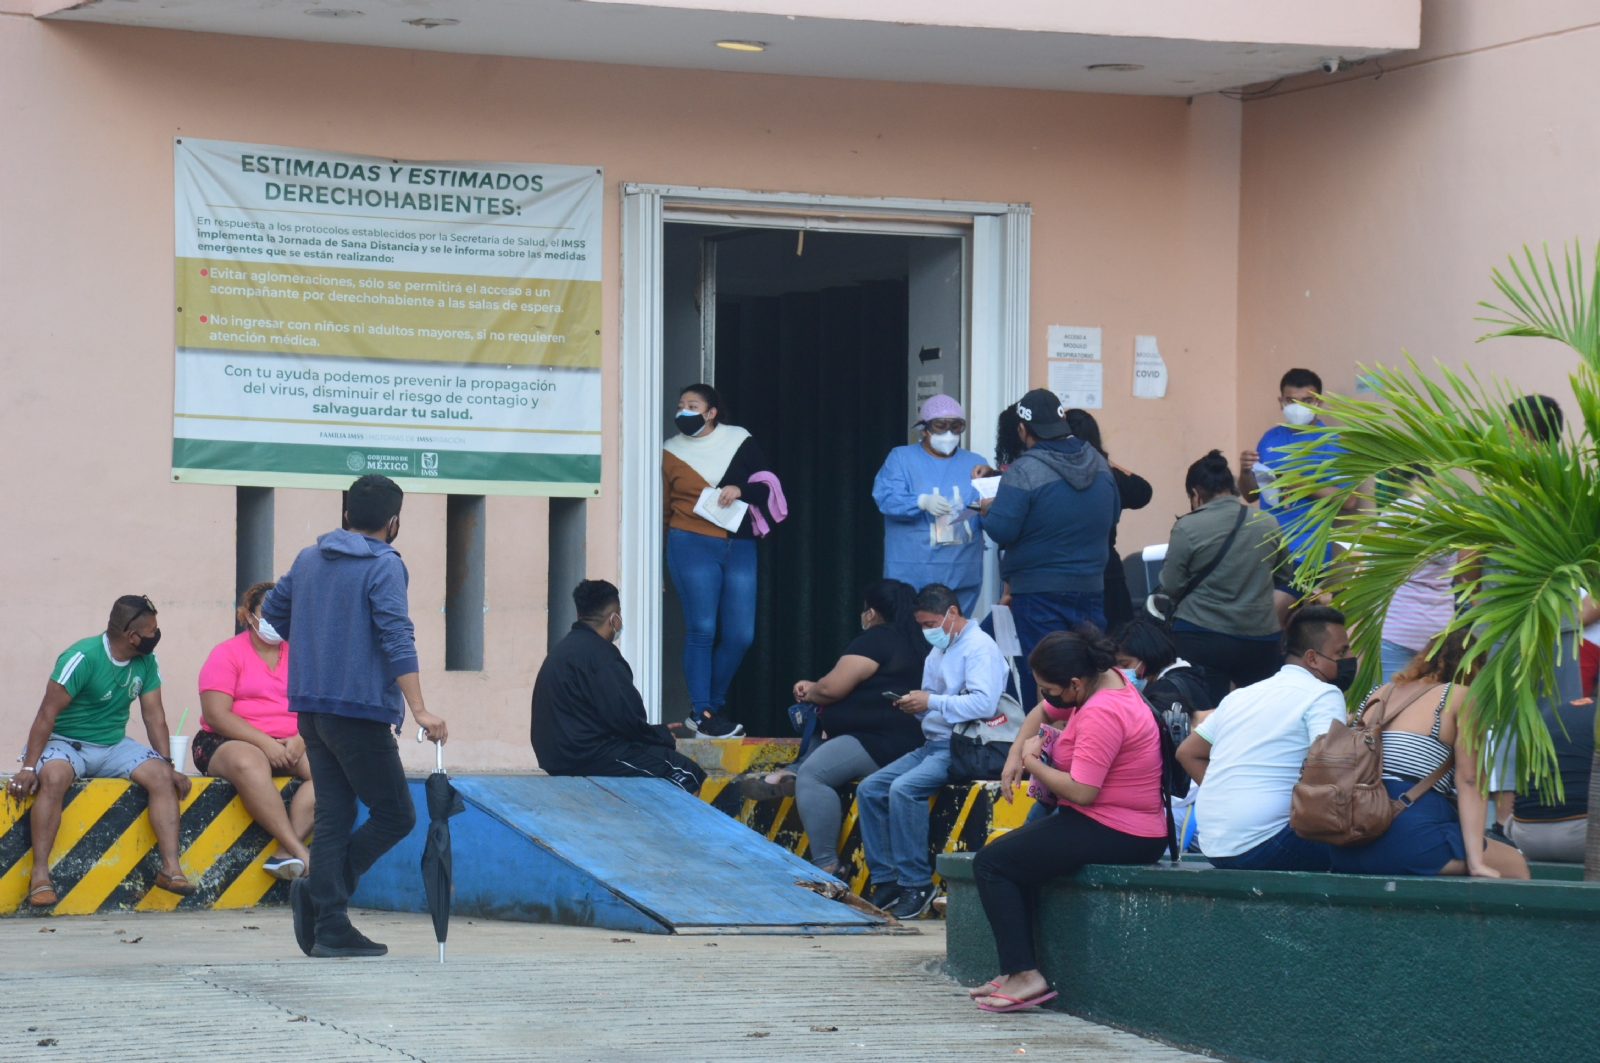 En el IMSS de Playa del Carmen se han visto filas de personas en espera de la aplicación de la prueba COVID